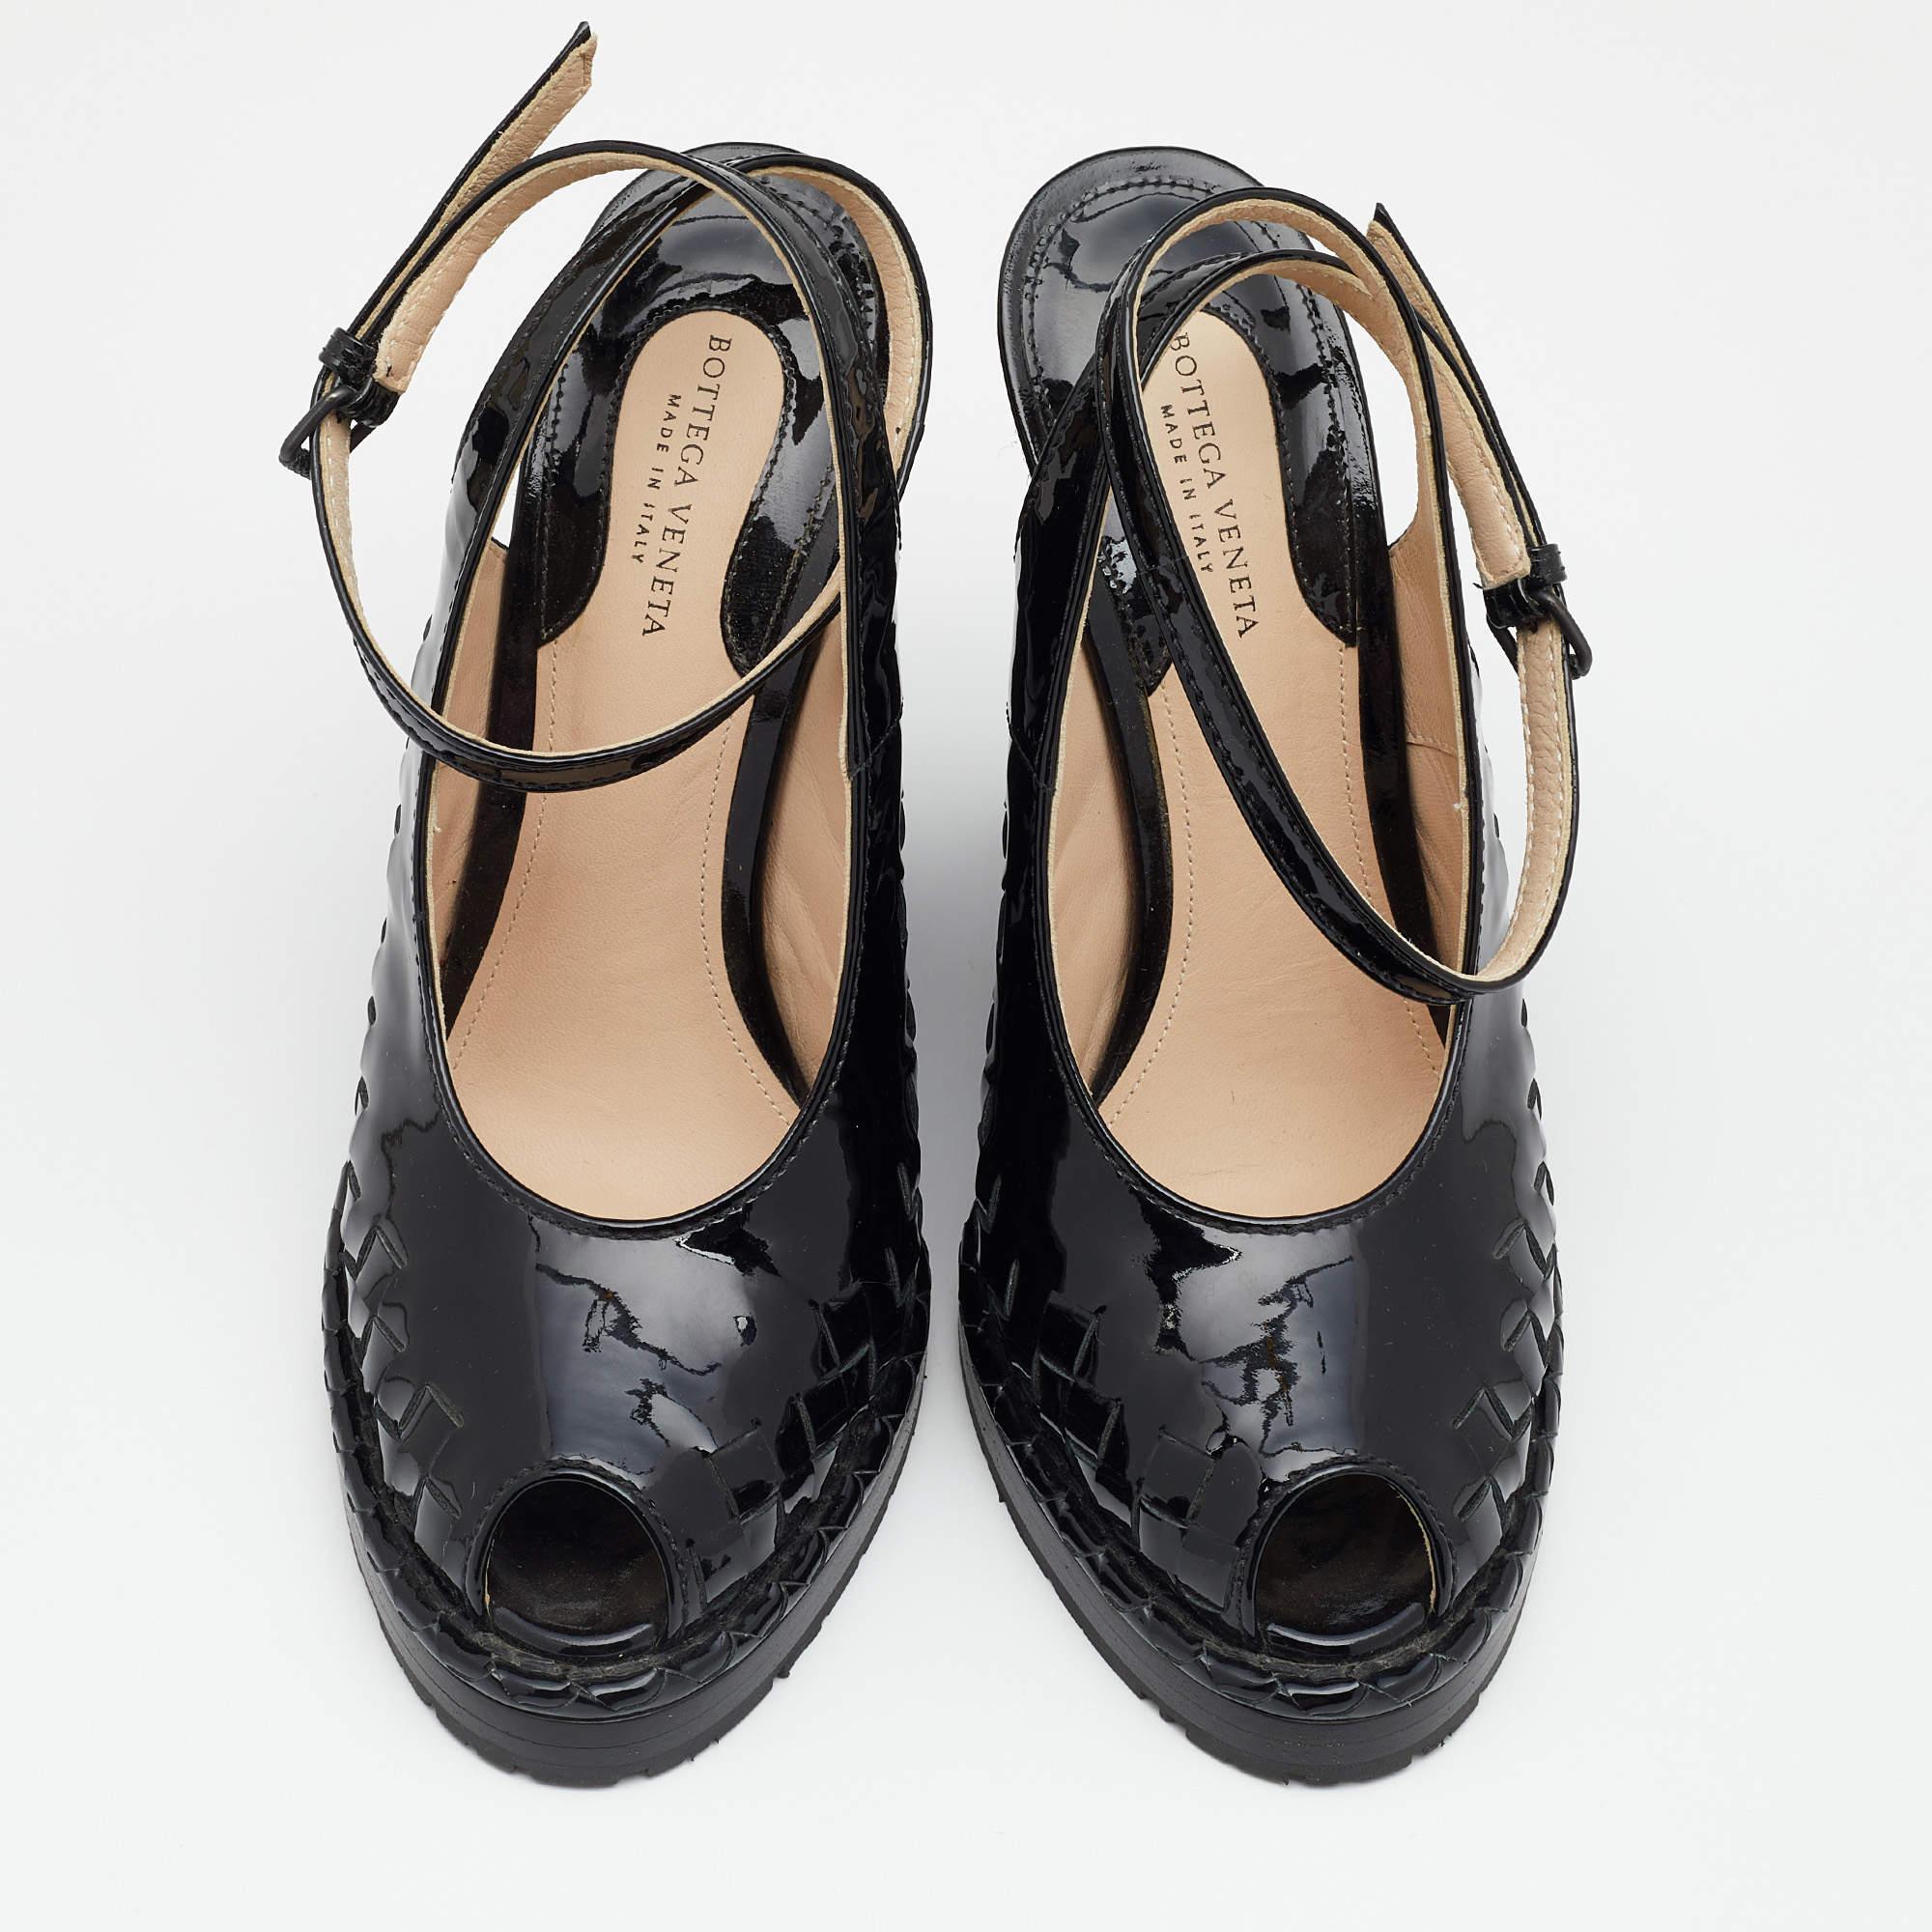 Bottega Veneta a toujours été réputée pour l'excellence de son travail. Conçues selon la technique Intrecciato, ces sandales compensées en cuir verni présentent une finition brillante. Le talon en jute tressée ton sur ton assure une bonne aisance à